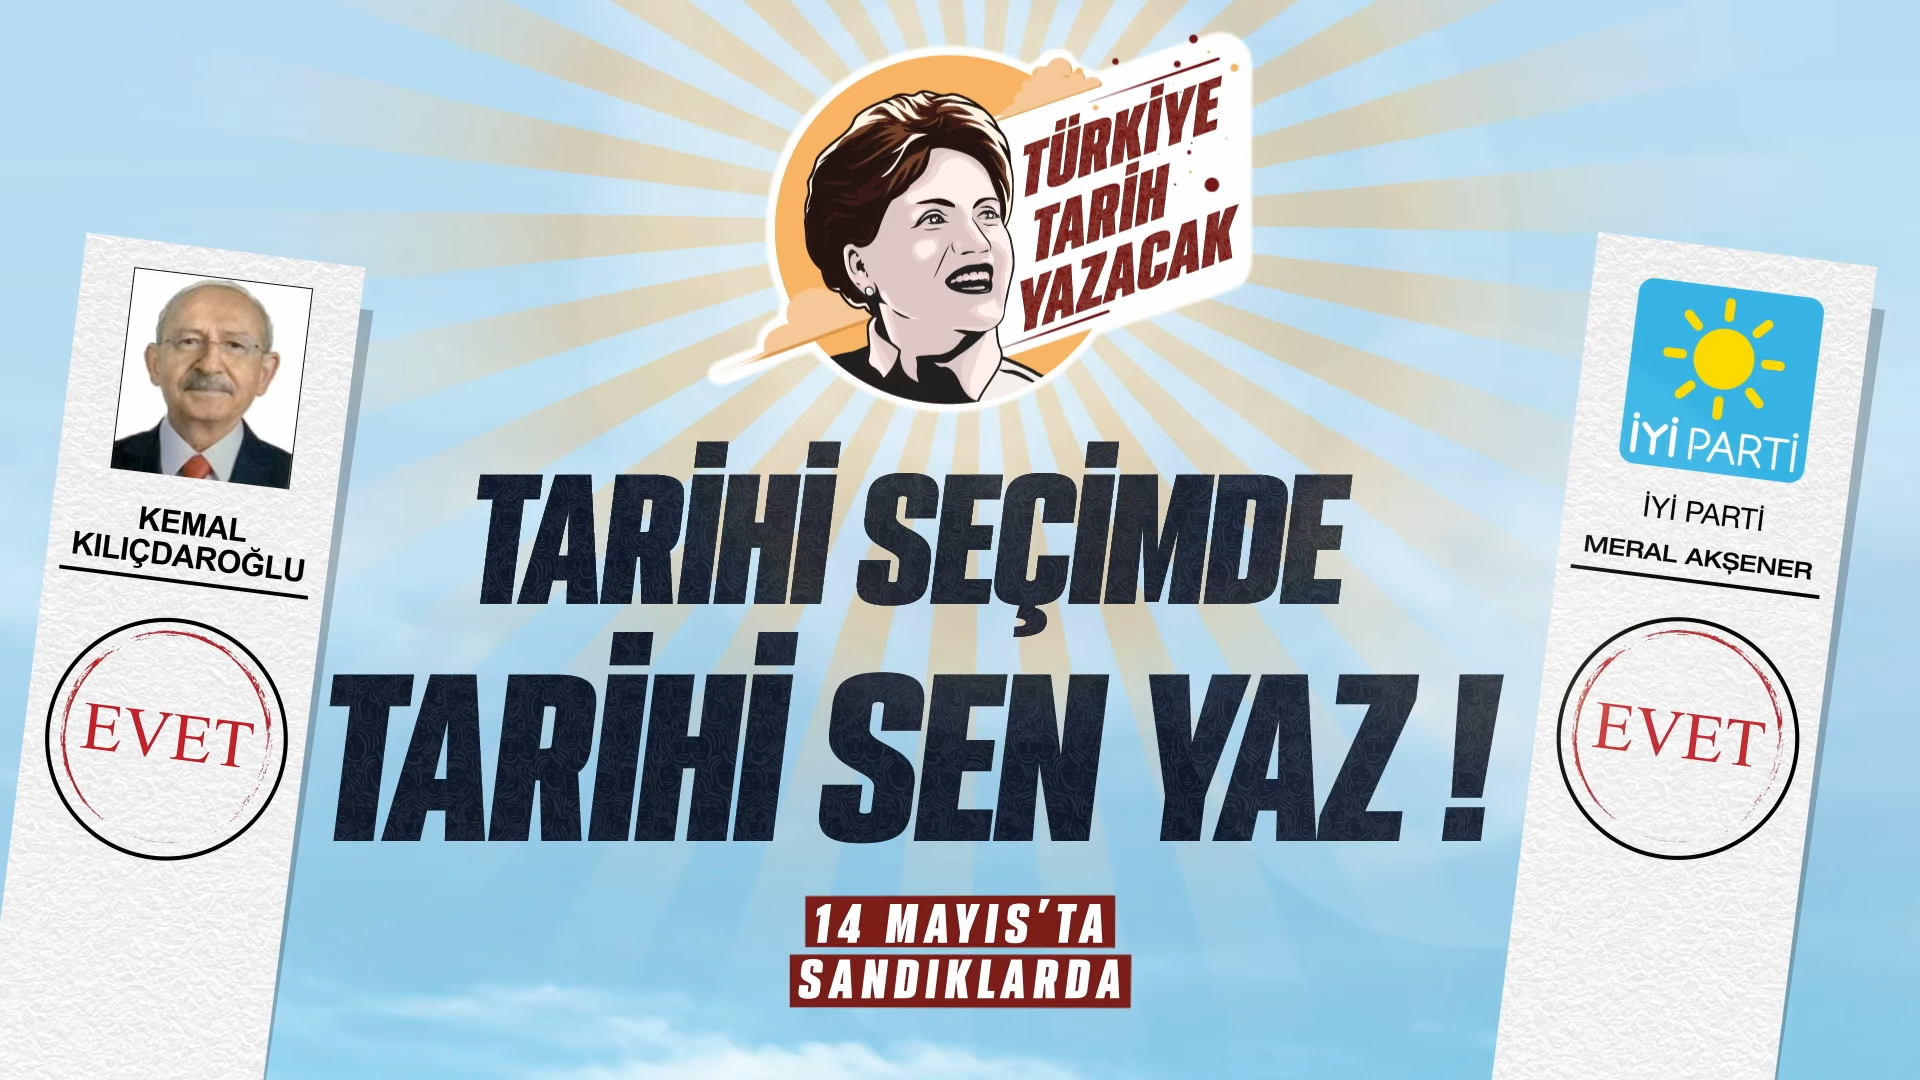 Saygılı Türkiye için 14 Mayıs’ta vur mührü #sesgelsin! 🫵🏻🗳Tarihi sen yaz, memlekete bahar gelsin! - YouTube